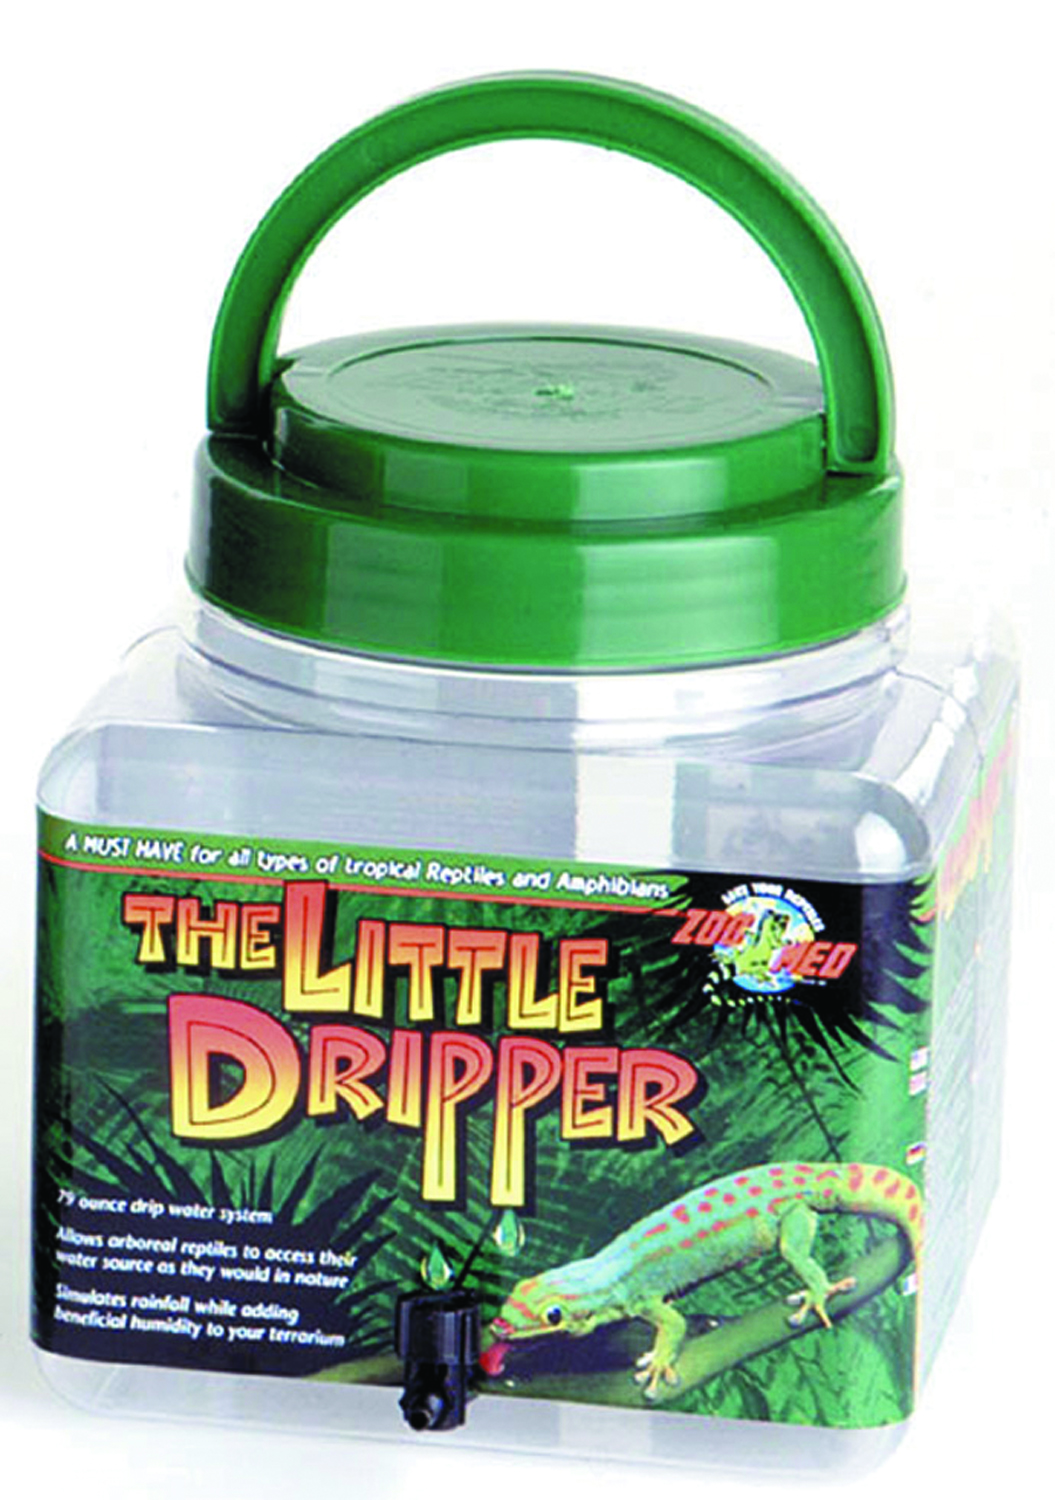 Little Dripper - 70 Oz